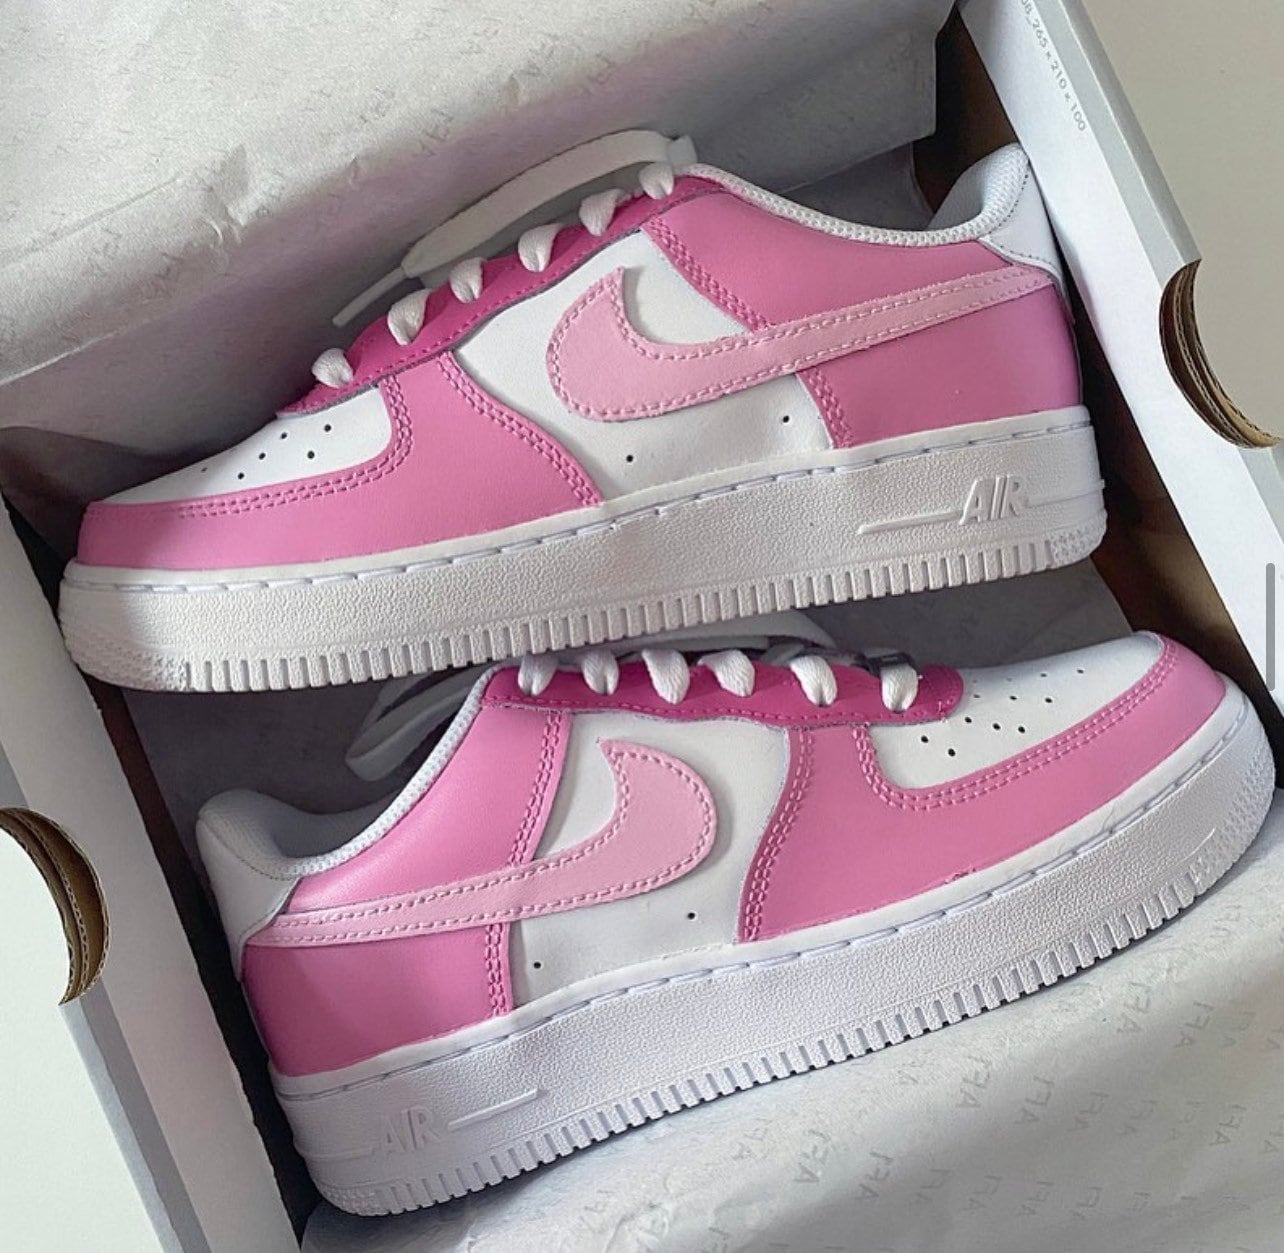 Barbie Pink Custom Nike Air Force 1 Sneakers Customs - Etsy